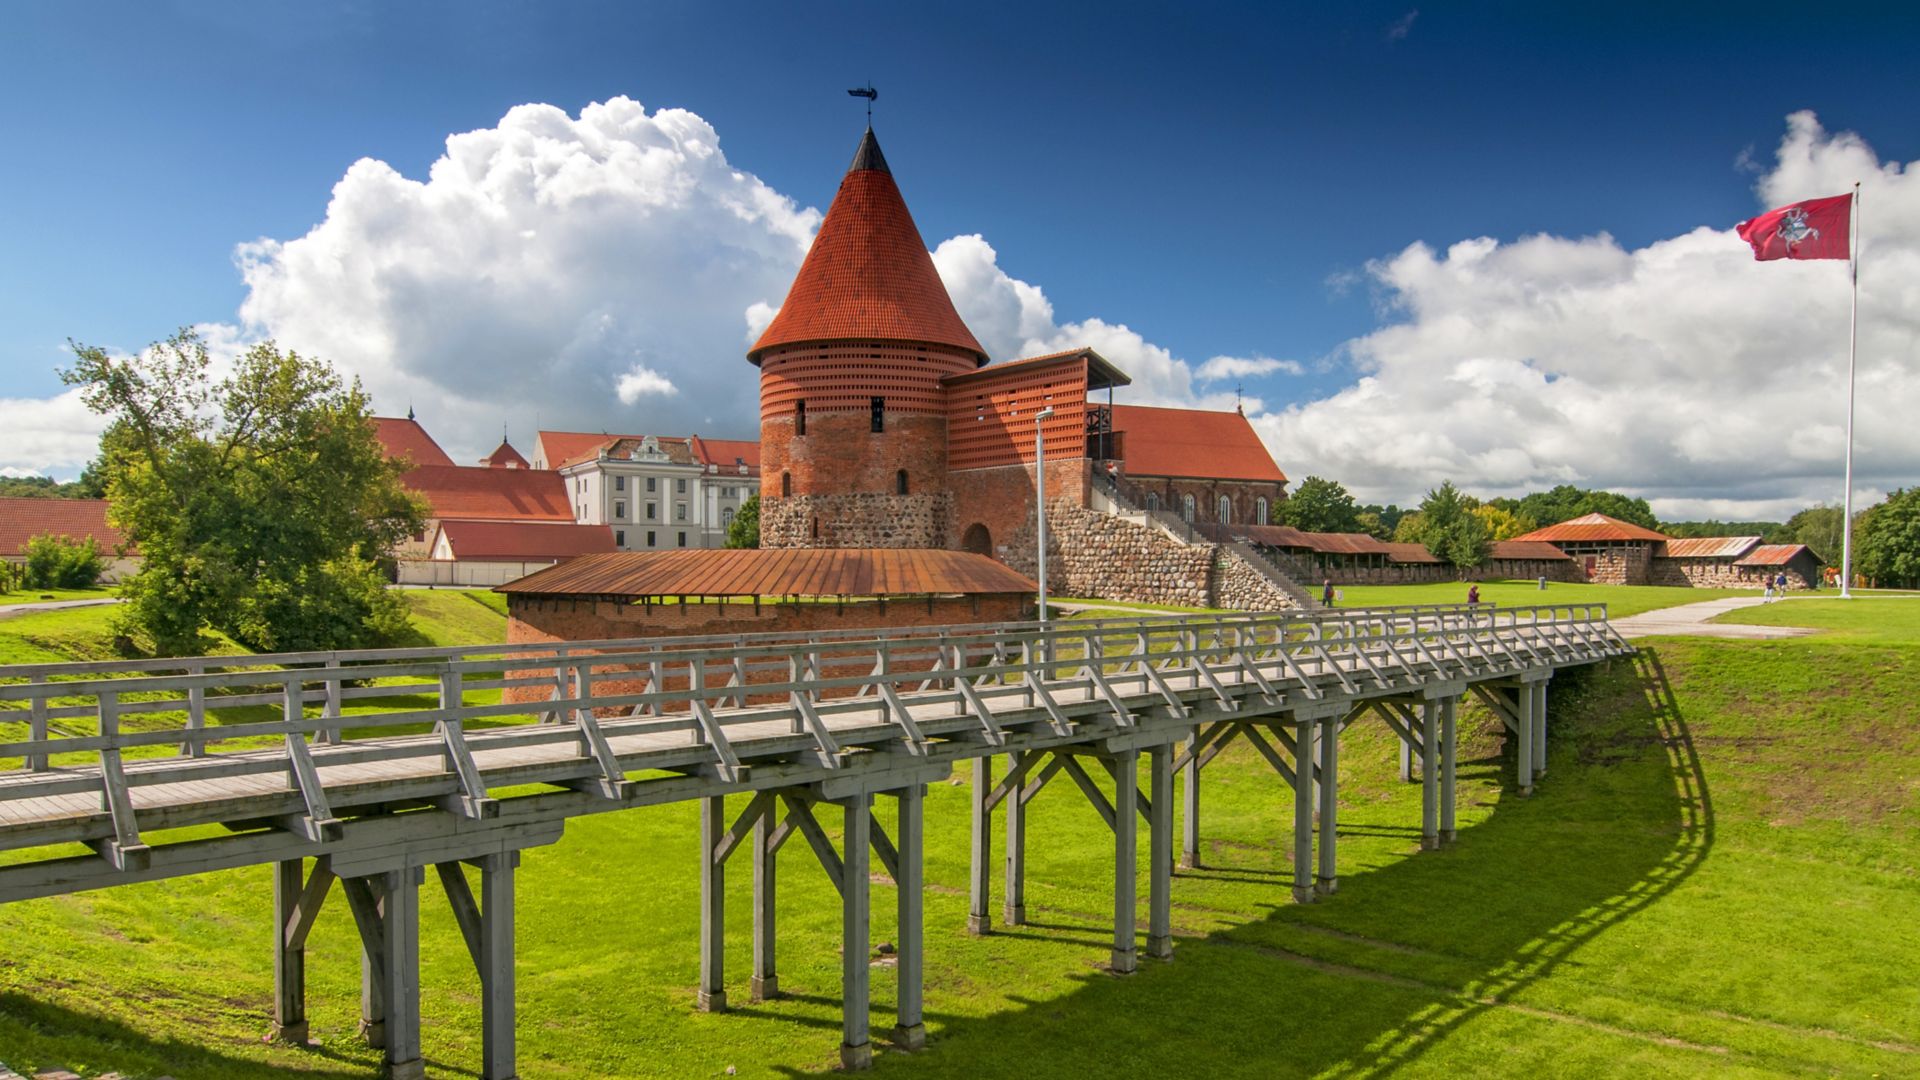 Zamek w Kownie, wzniesiony w połowie XIV wieku w stylu gotyckim, Kowno, Litwa